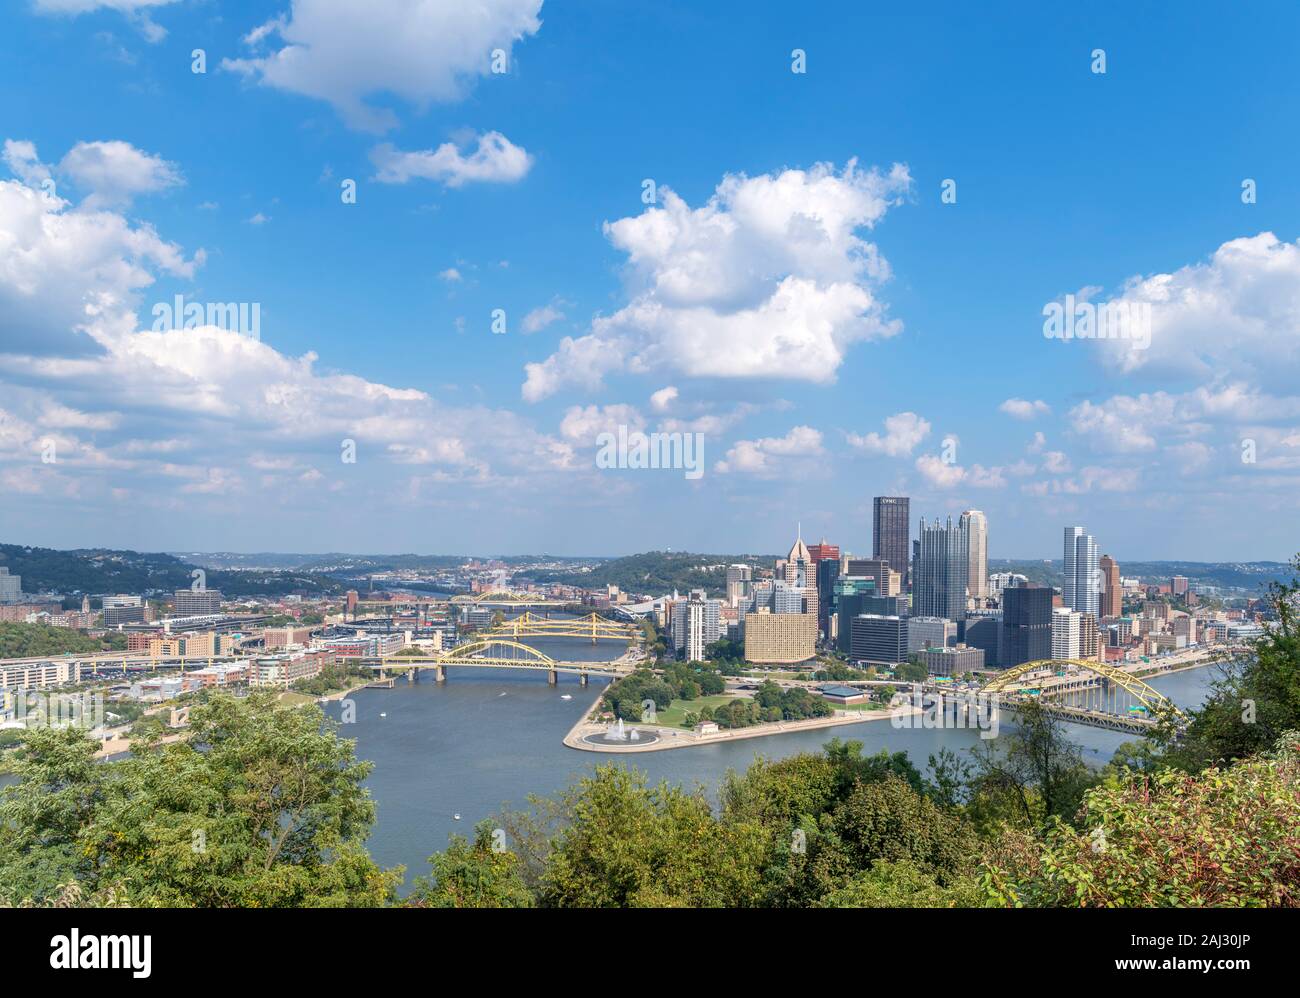 Vista aerea della skyline del centro da punti di vista parco su Grandview Avenue, Pittsburgh, Pennsylvania, STATI UNITI D'AMERICA Foto Stock